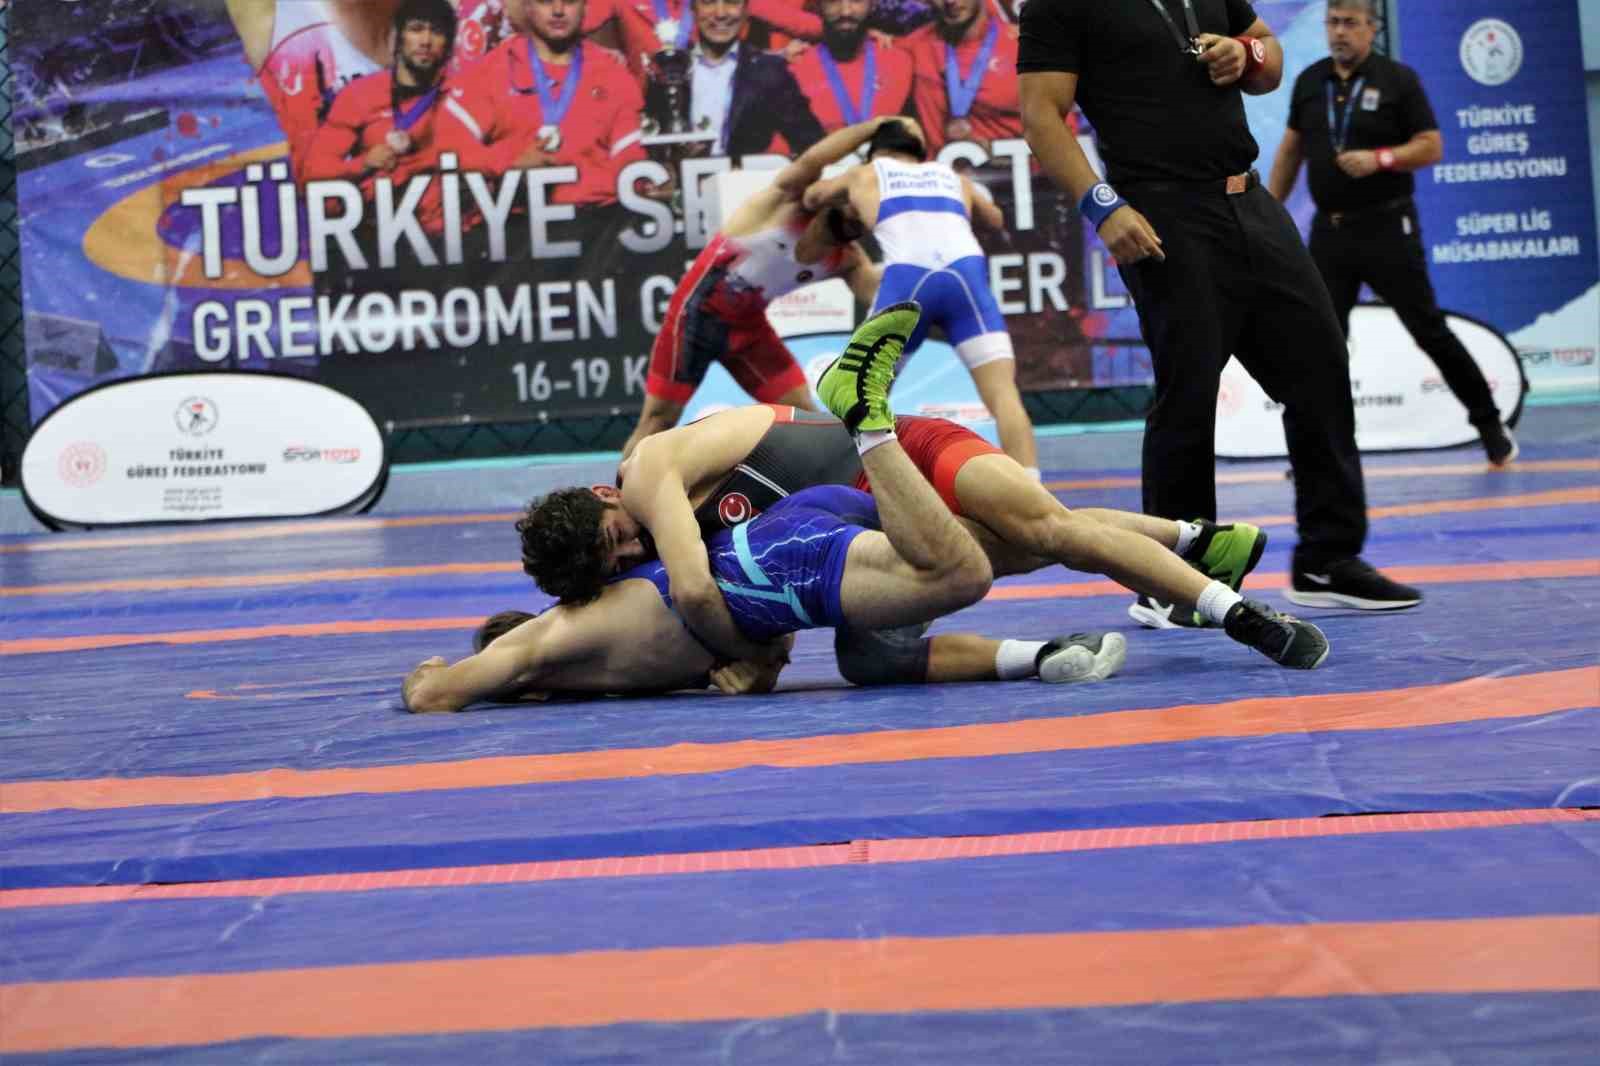 Türkiye Güreş Federasyonu Başkan Vekili Kerim Salman: "Olimpiyat madalyalarıyla ülkemize dönüş yapacağız"